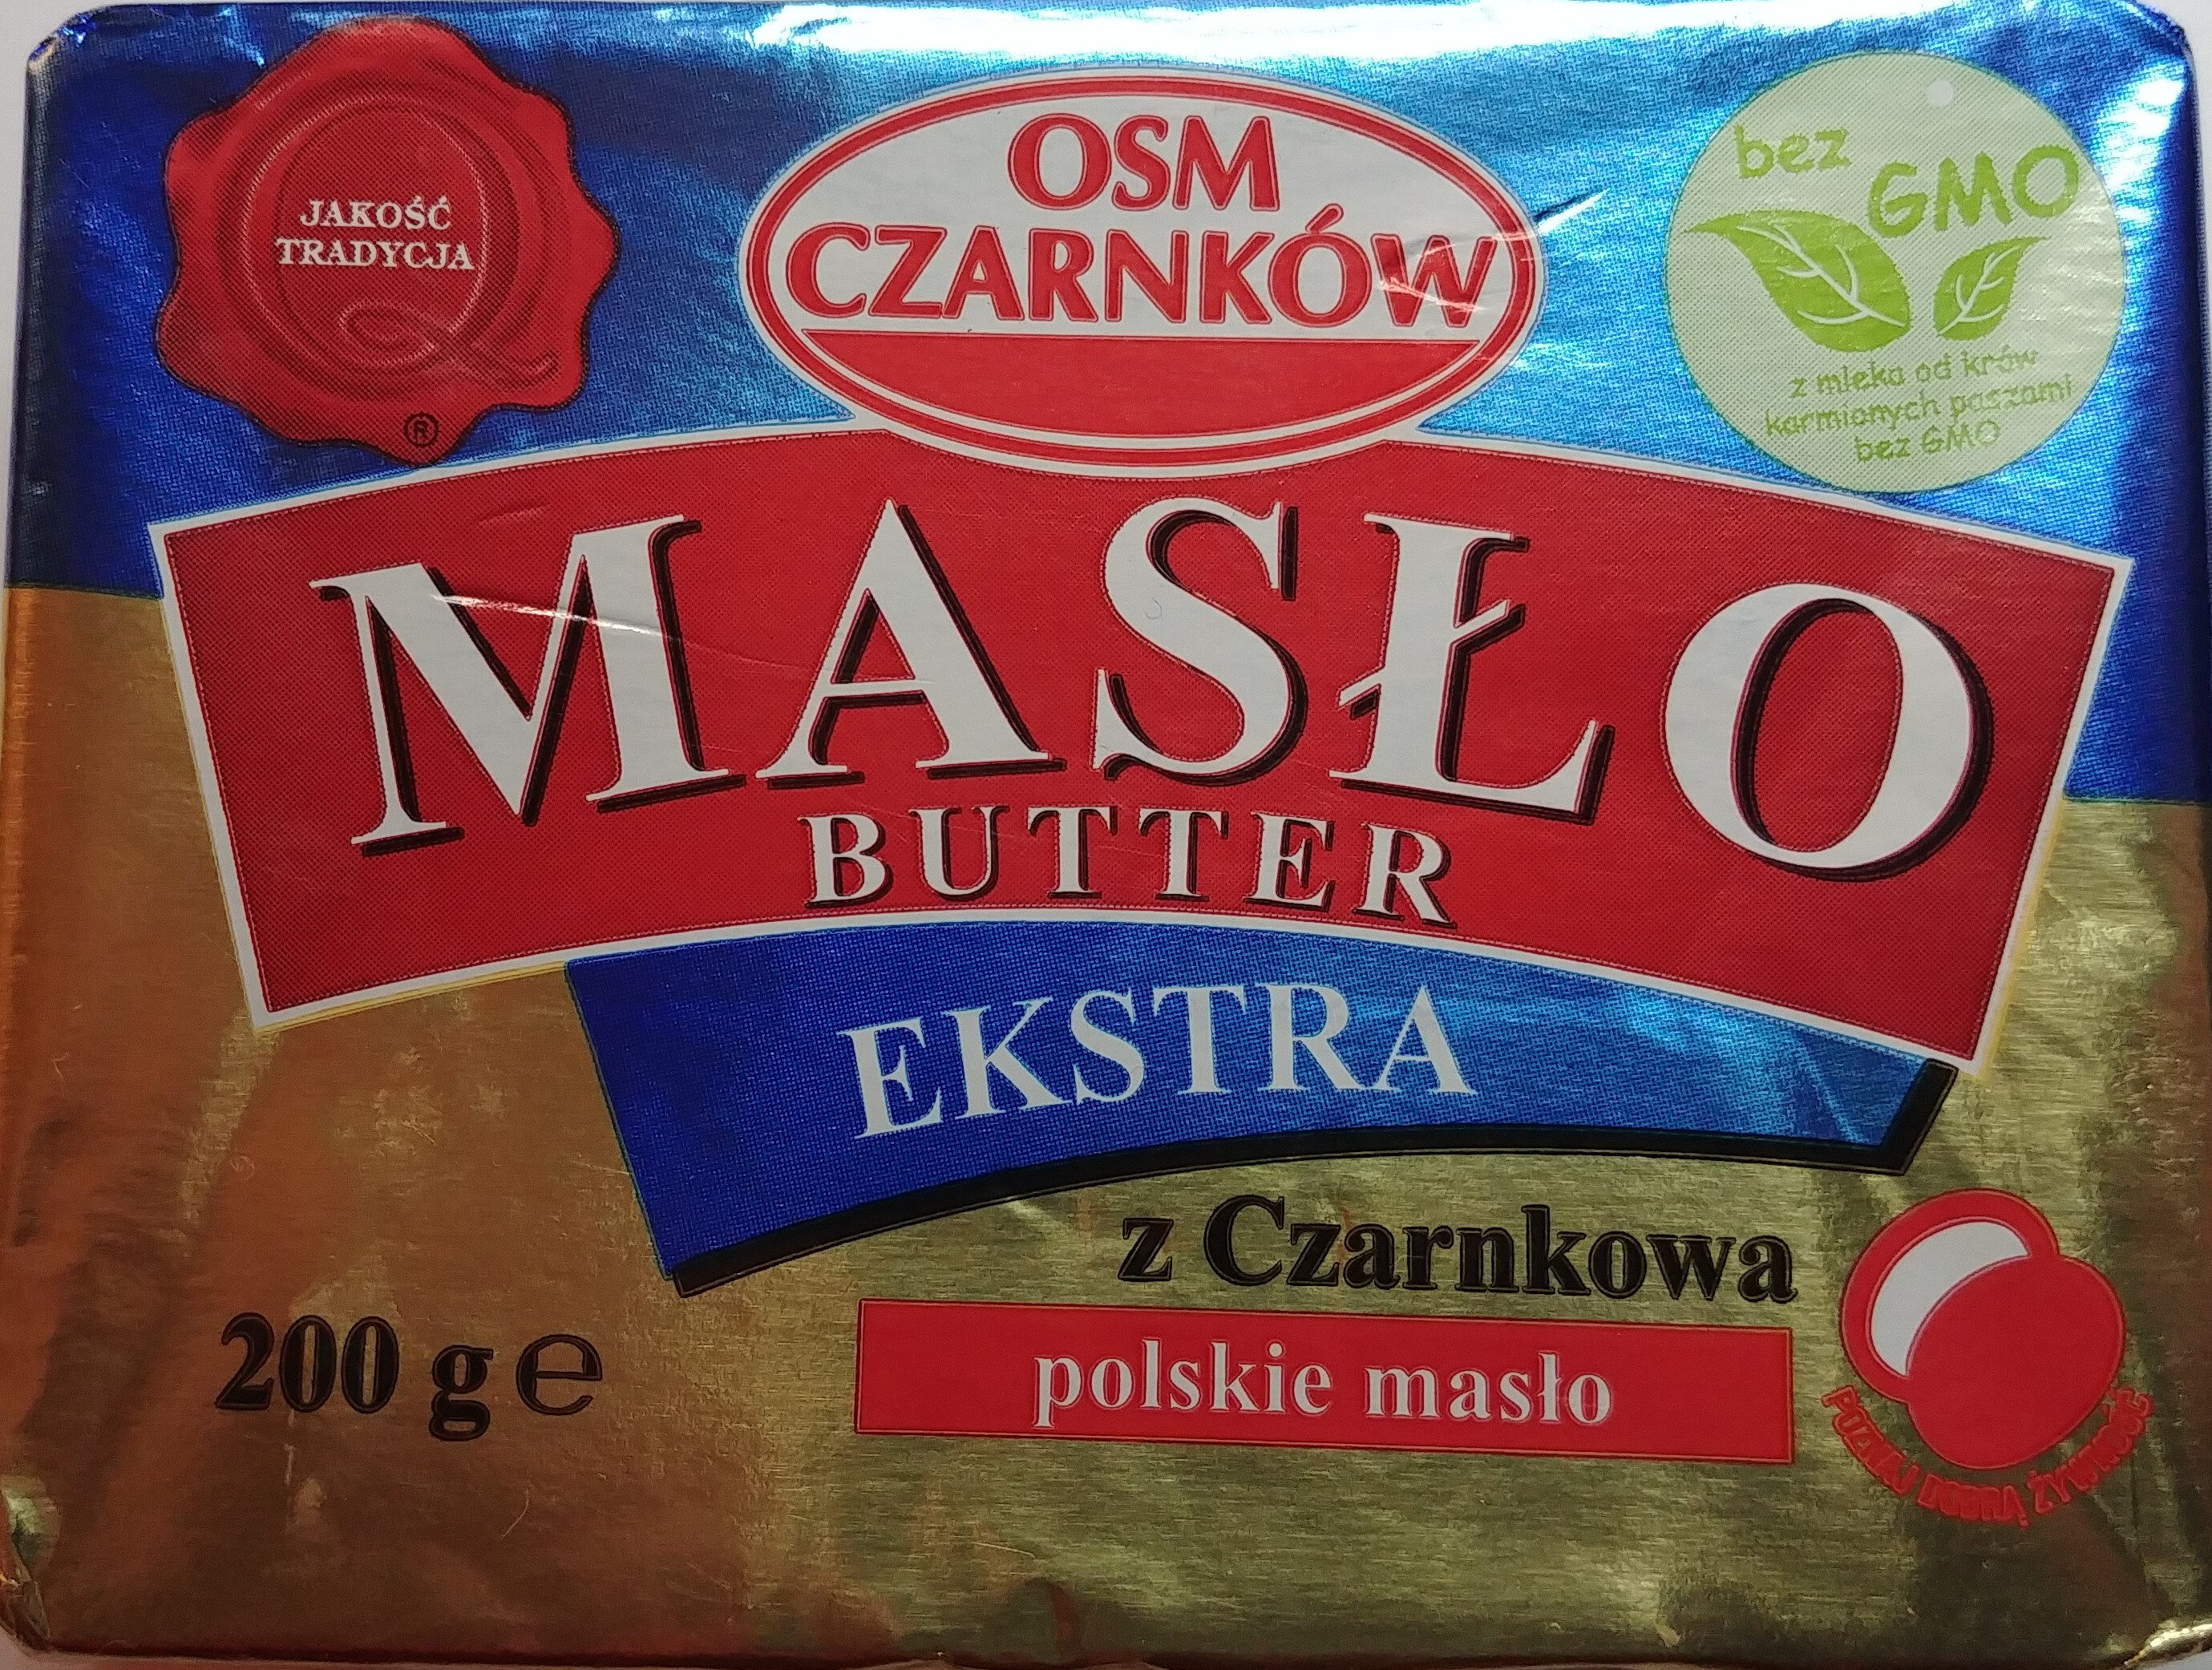 Masło z Czarnkowa - Product - pl